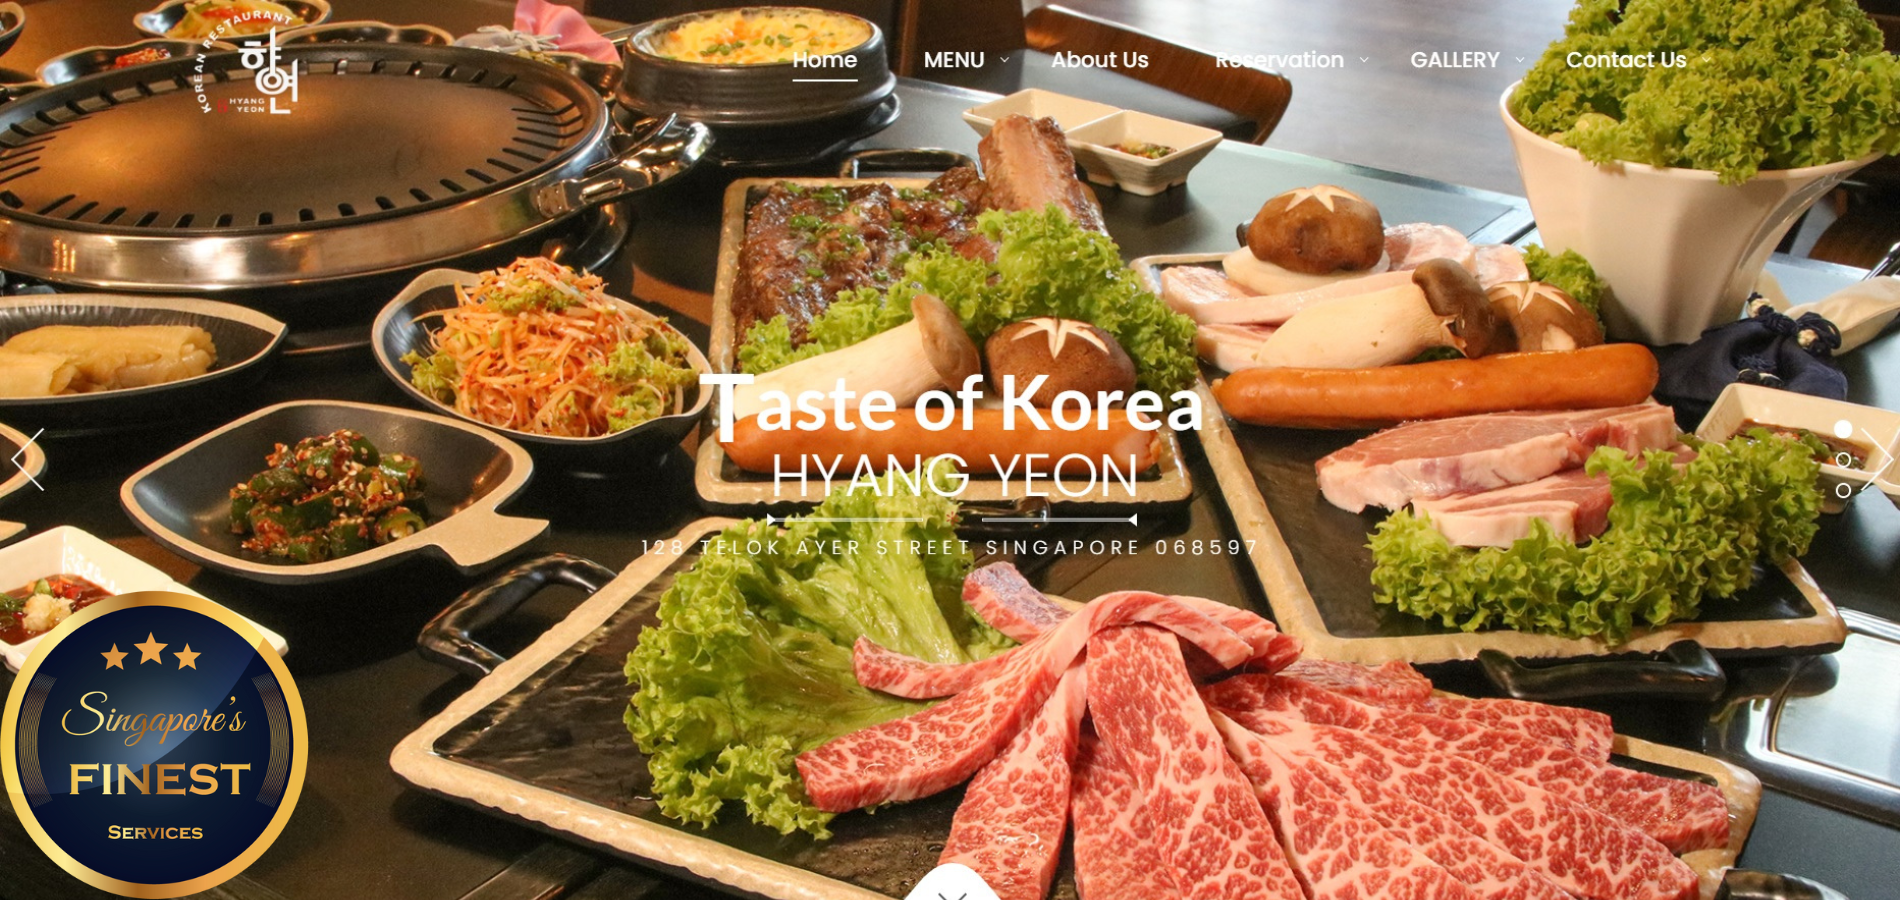 10 Best Korean BBQ Restaurants in Singapore